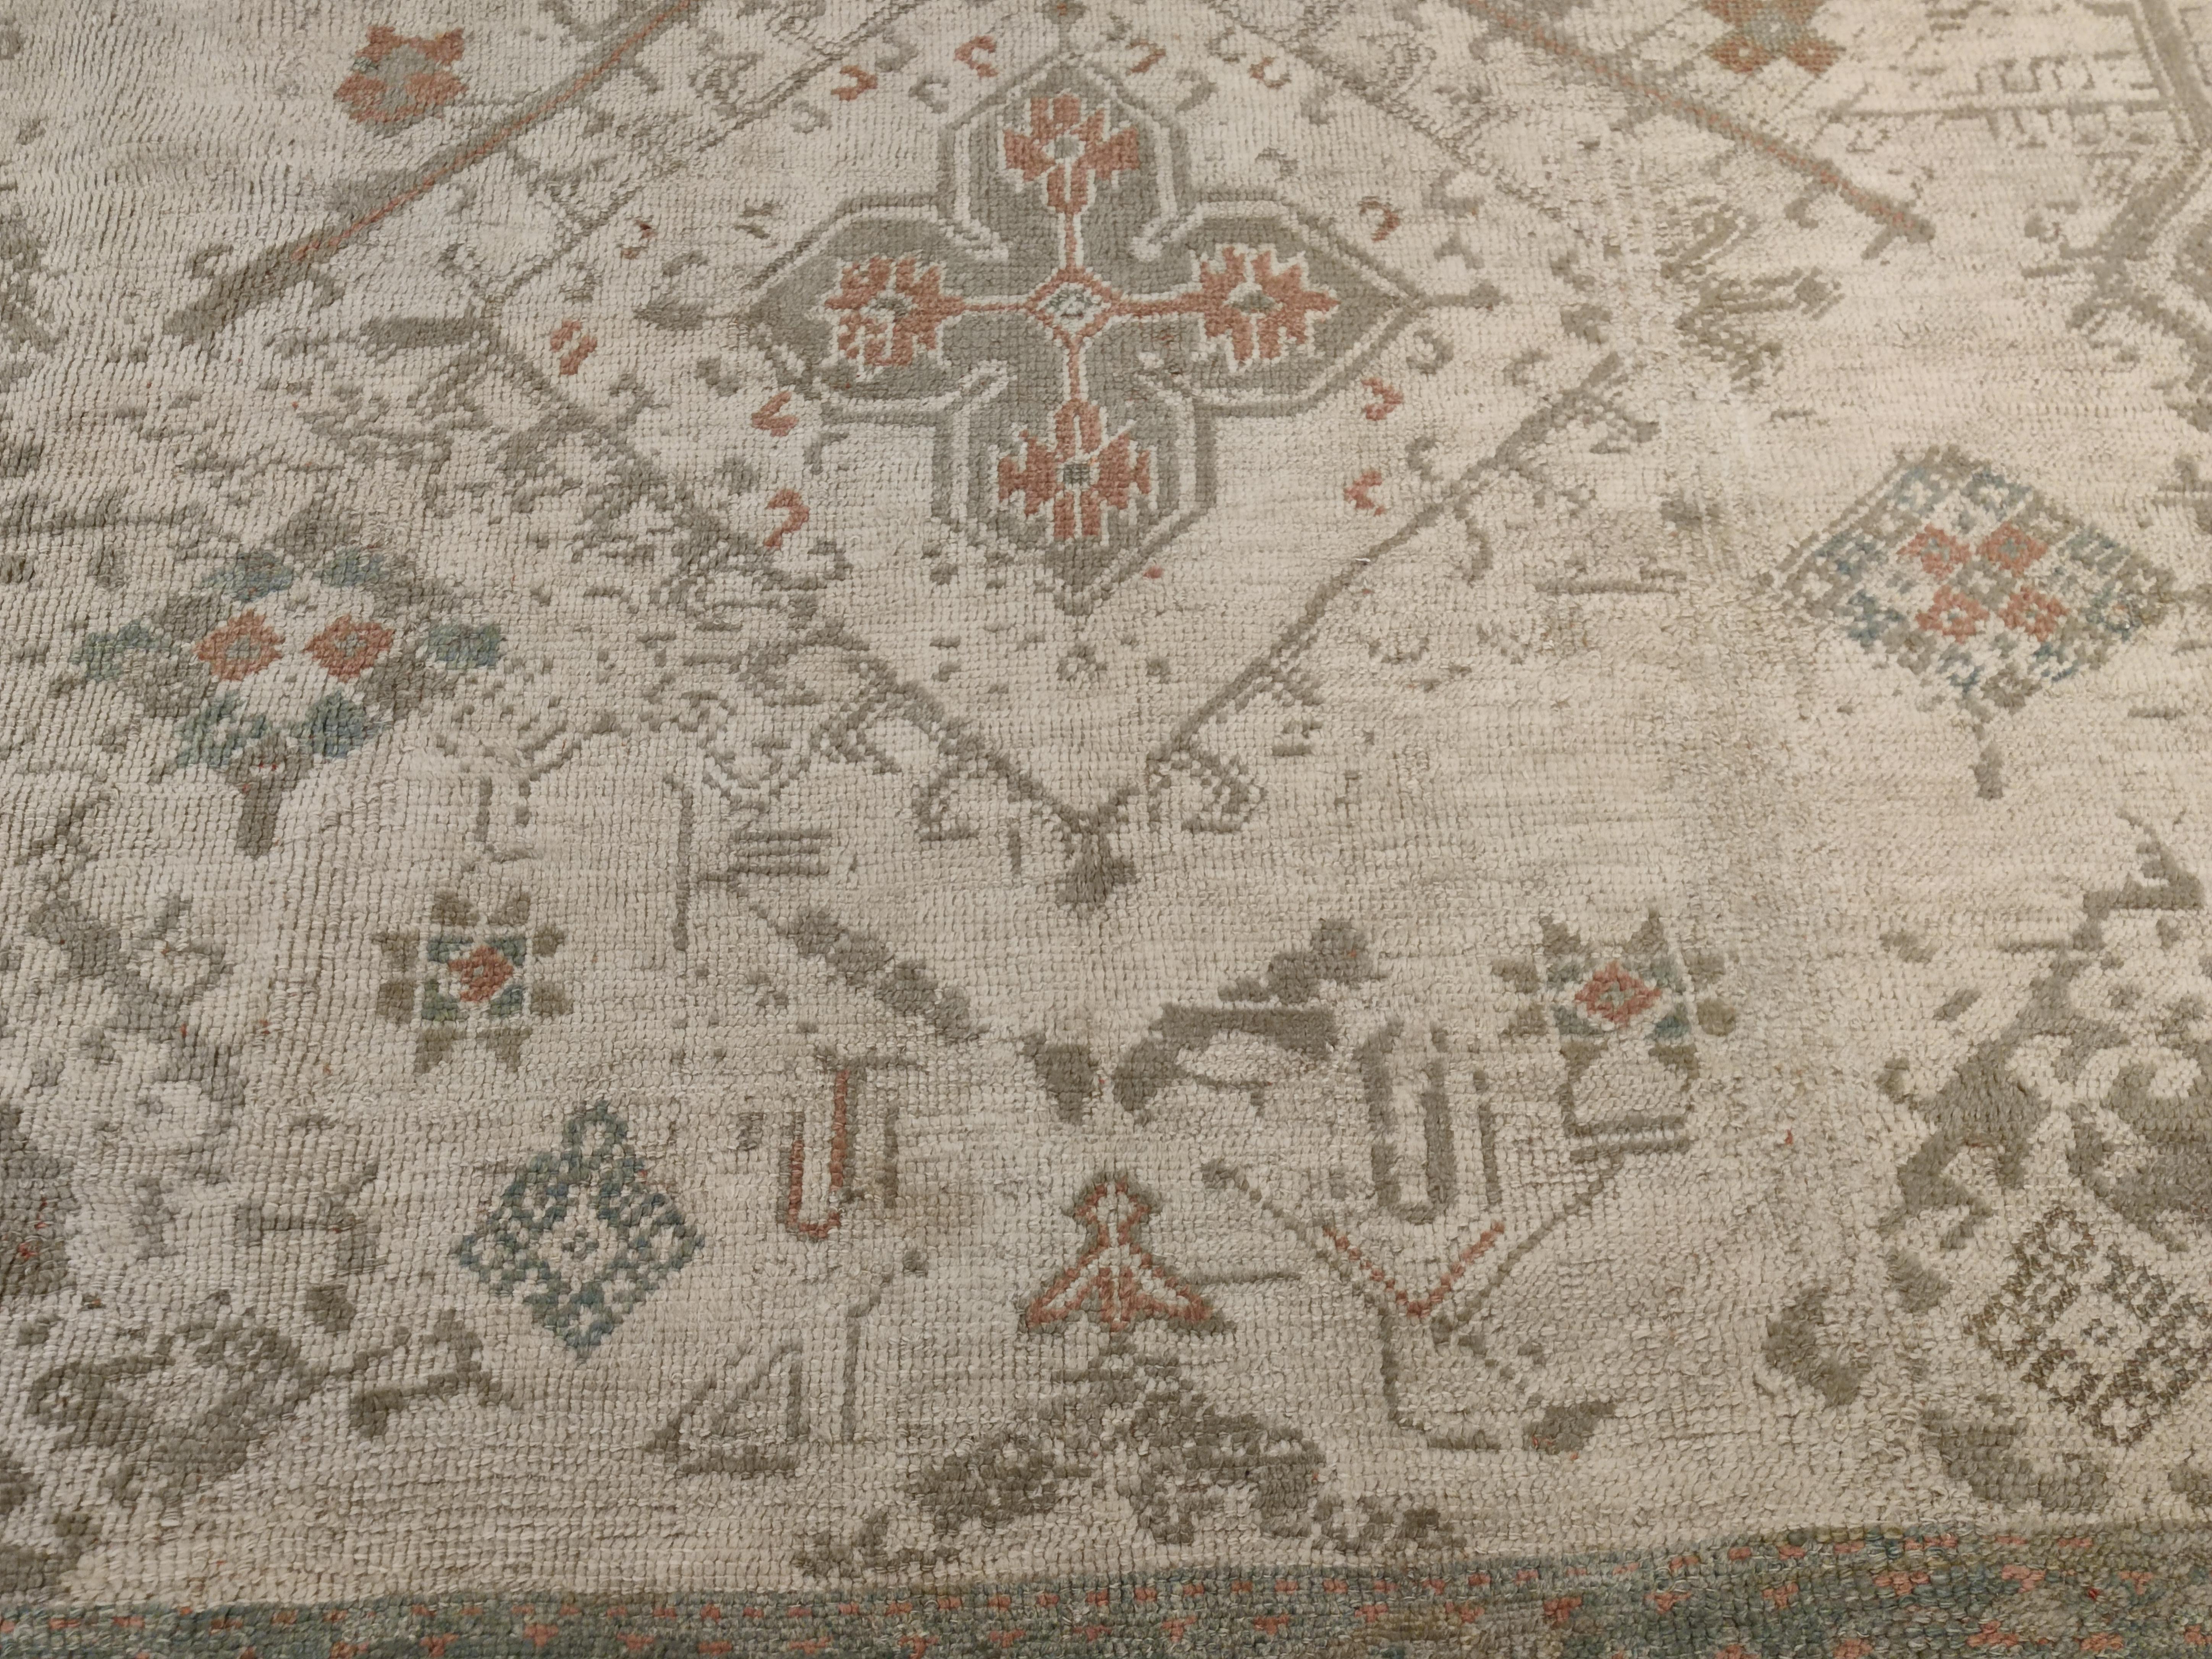 Ein raffinierter und eleganter Oushak-Teppich in Übergröße, der sich durch ein großflächiges Muster aus parallelen und versetzten Reihen von vierzackigen Sternen auszeichnet, die für Oushak-Teppiche aus dem 16. Die weiche Farbpalette besteht aus